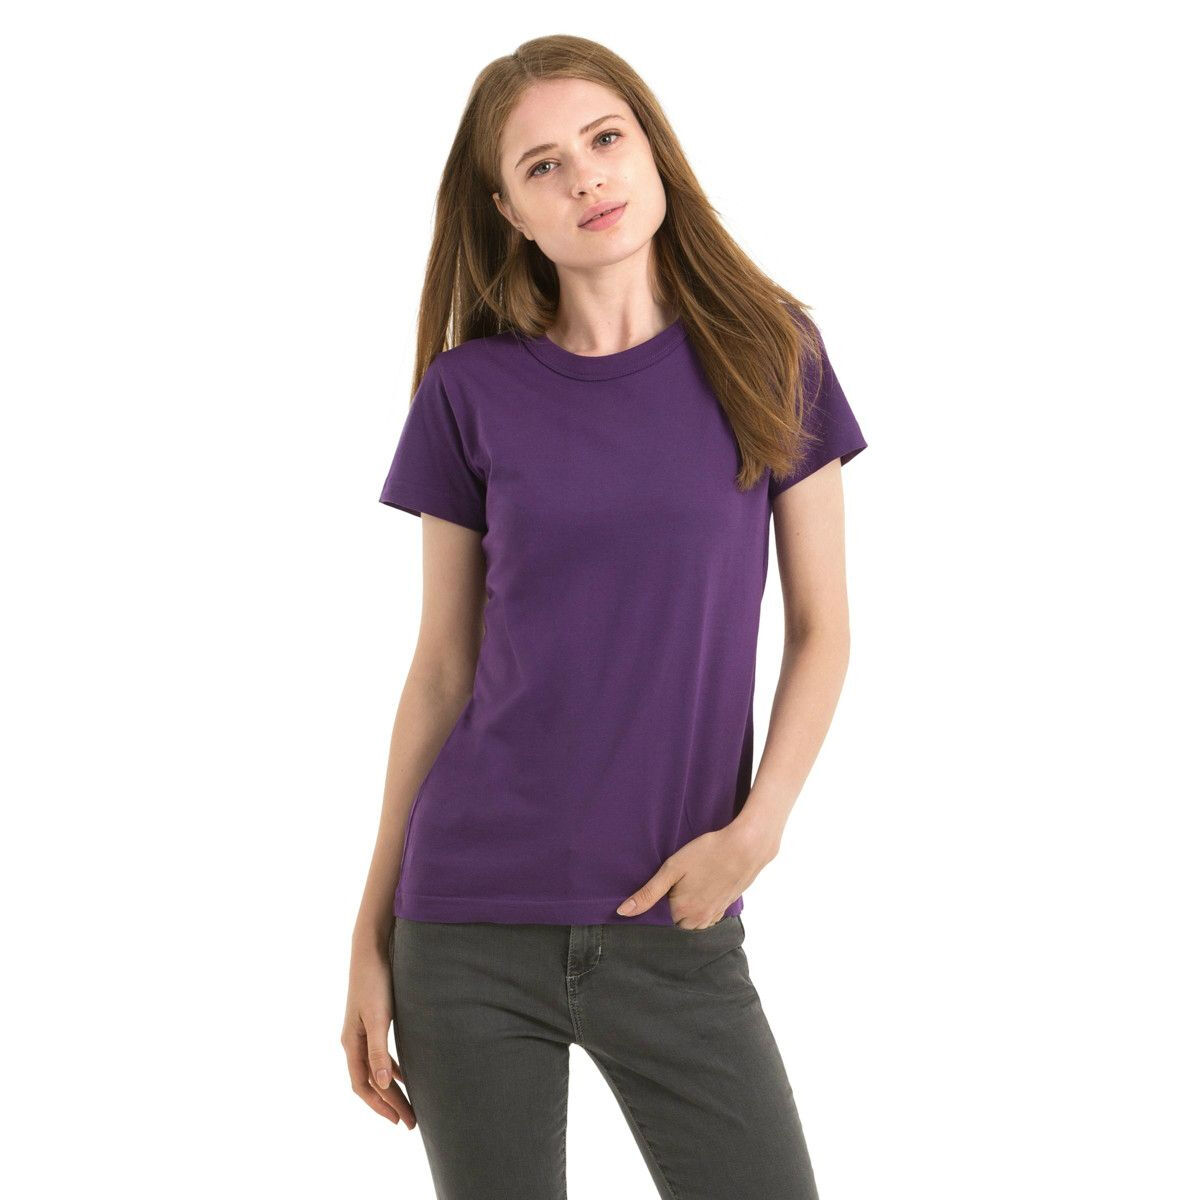 B&C Exact 190 Crew Neck T-shirts Women's (Purple)